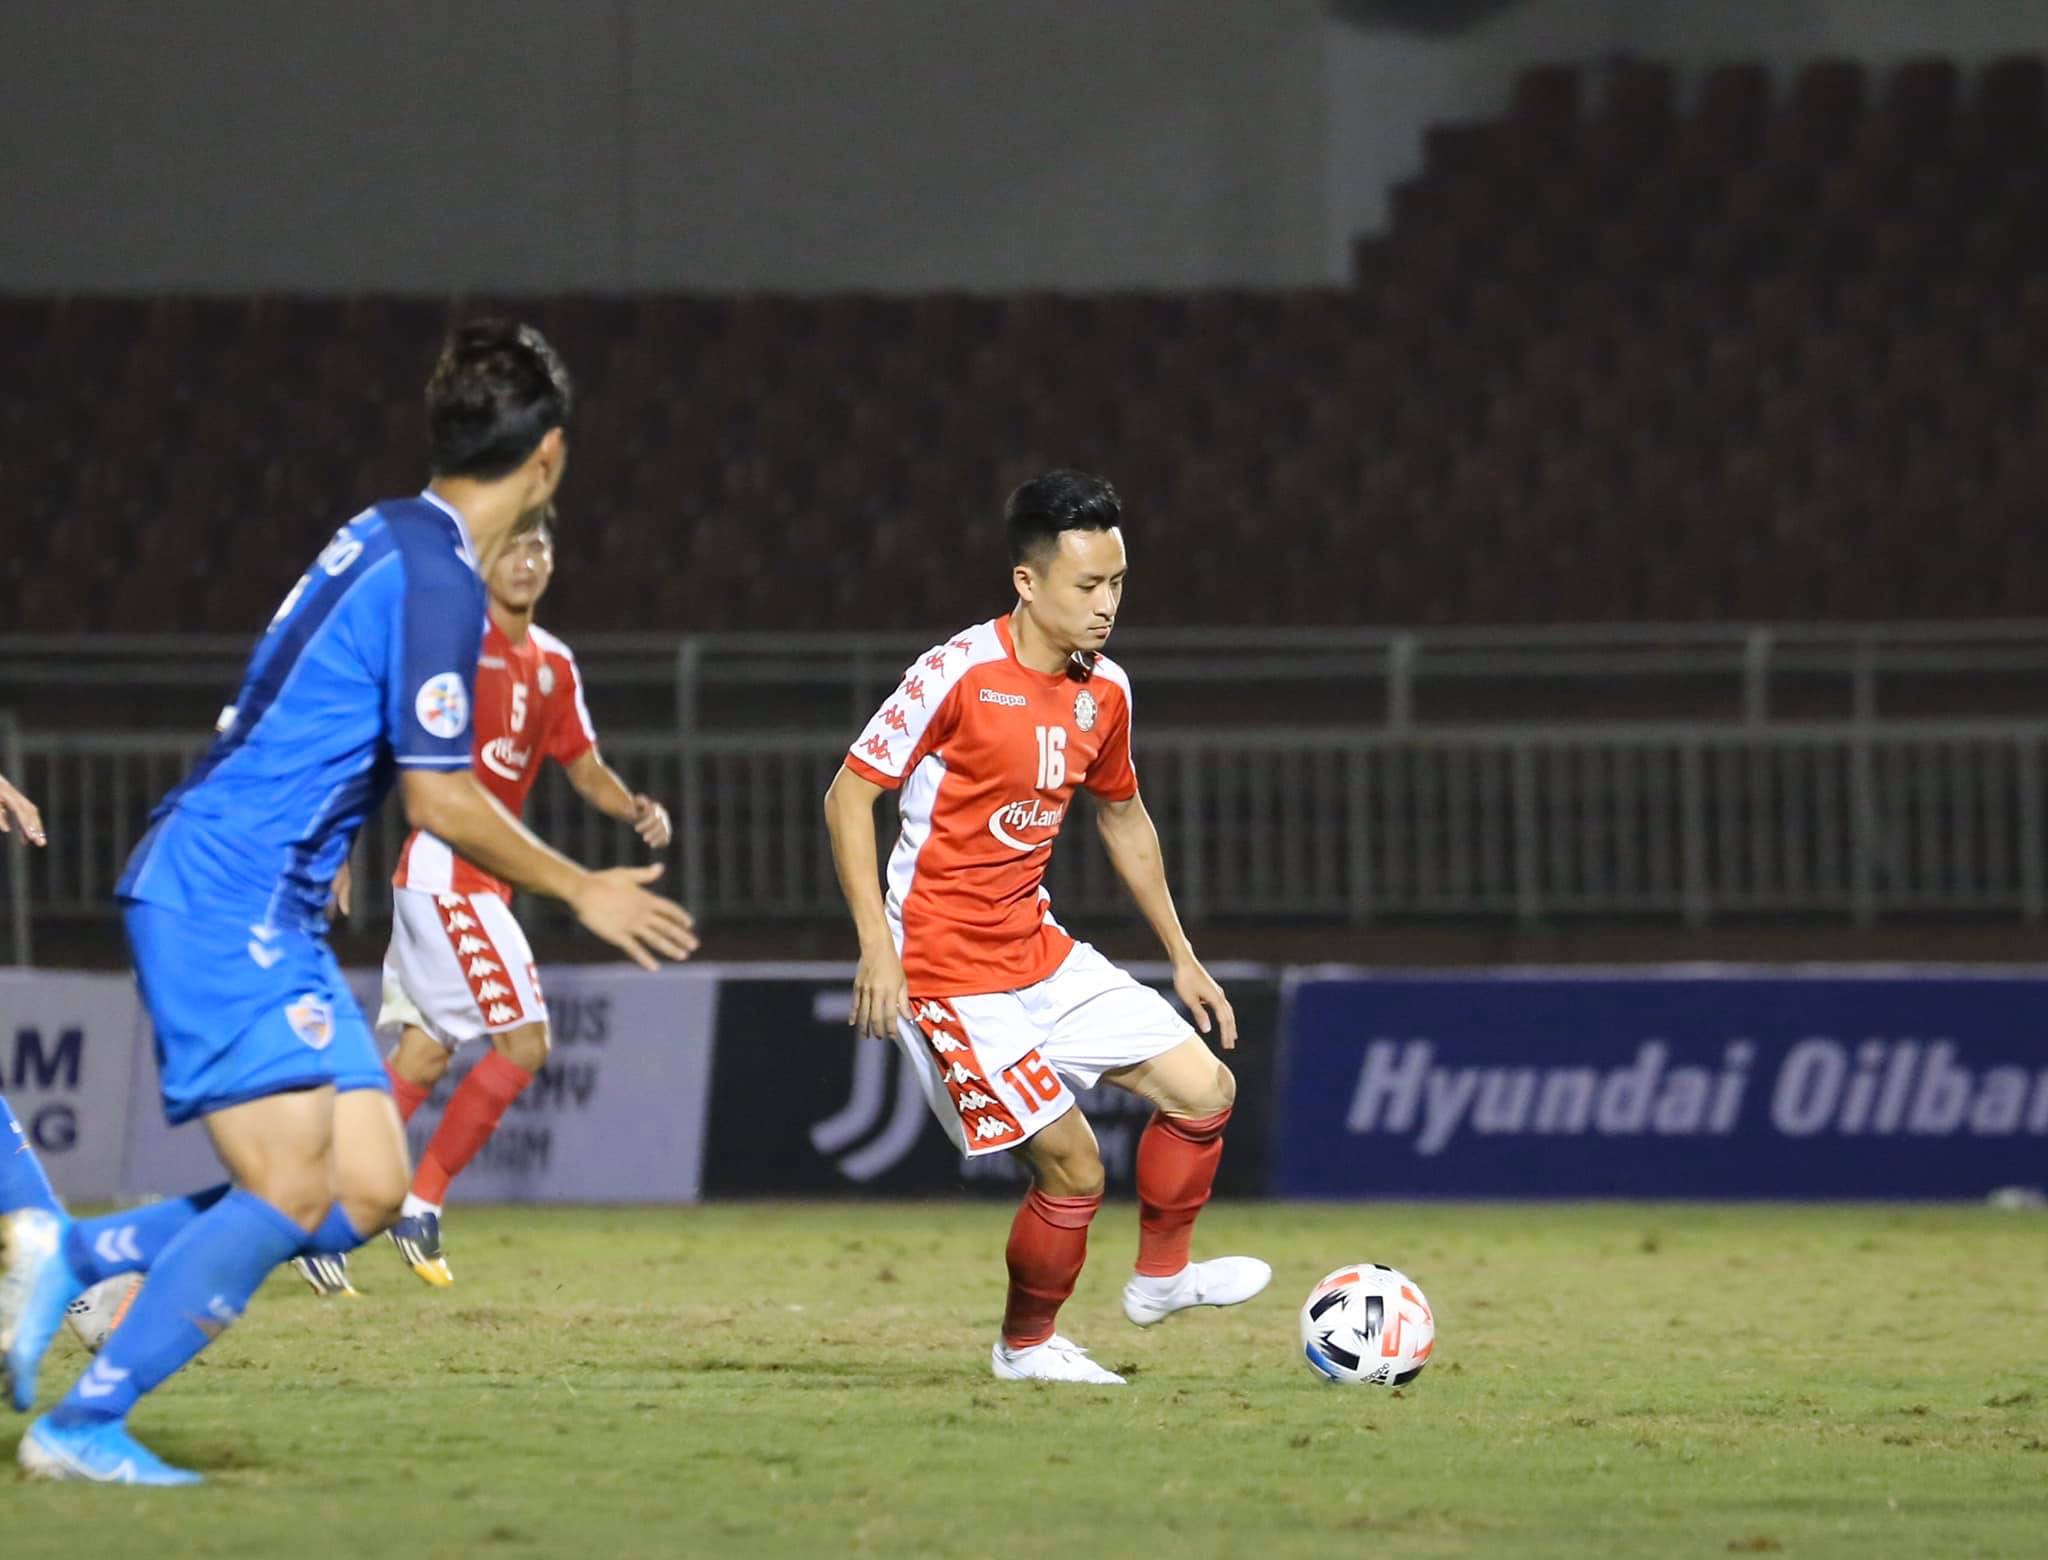 Nhận định Buriram United vs TP Hồ Chí Minh, 18h30 ngày 21/1